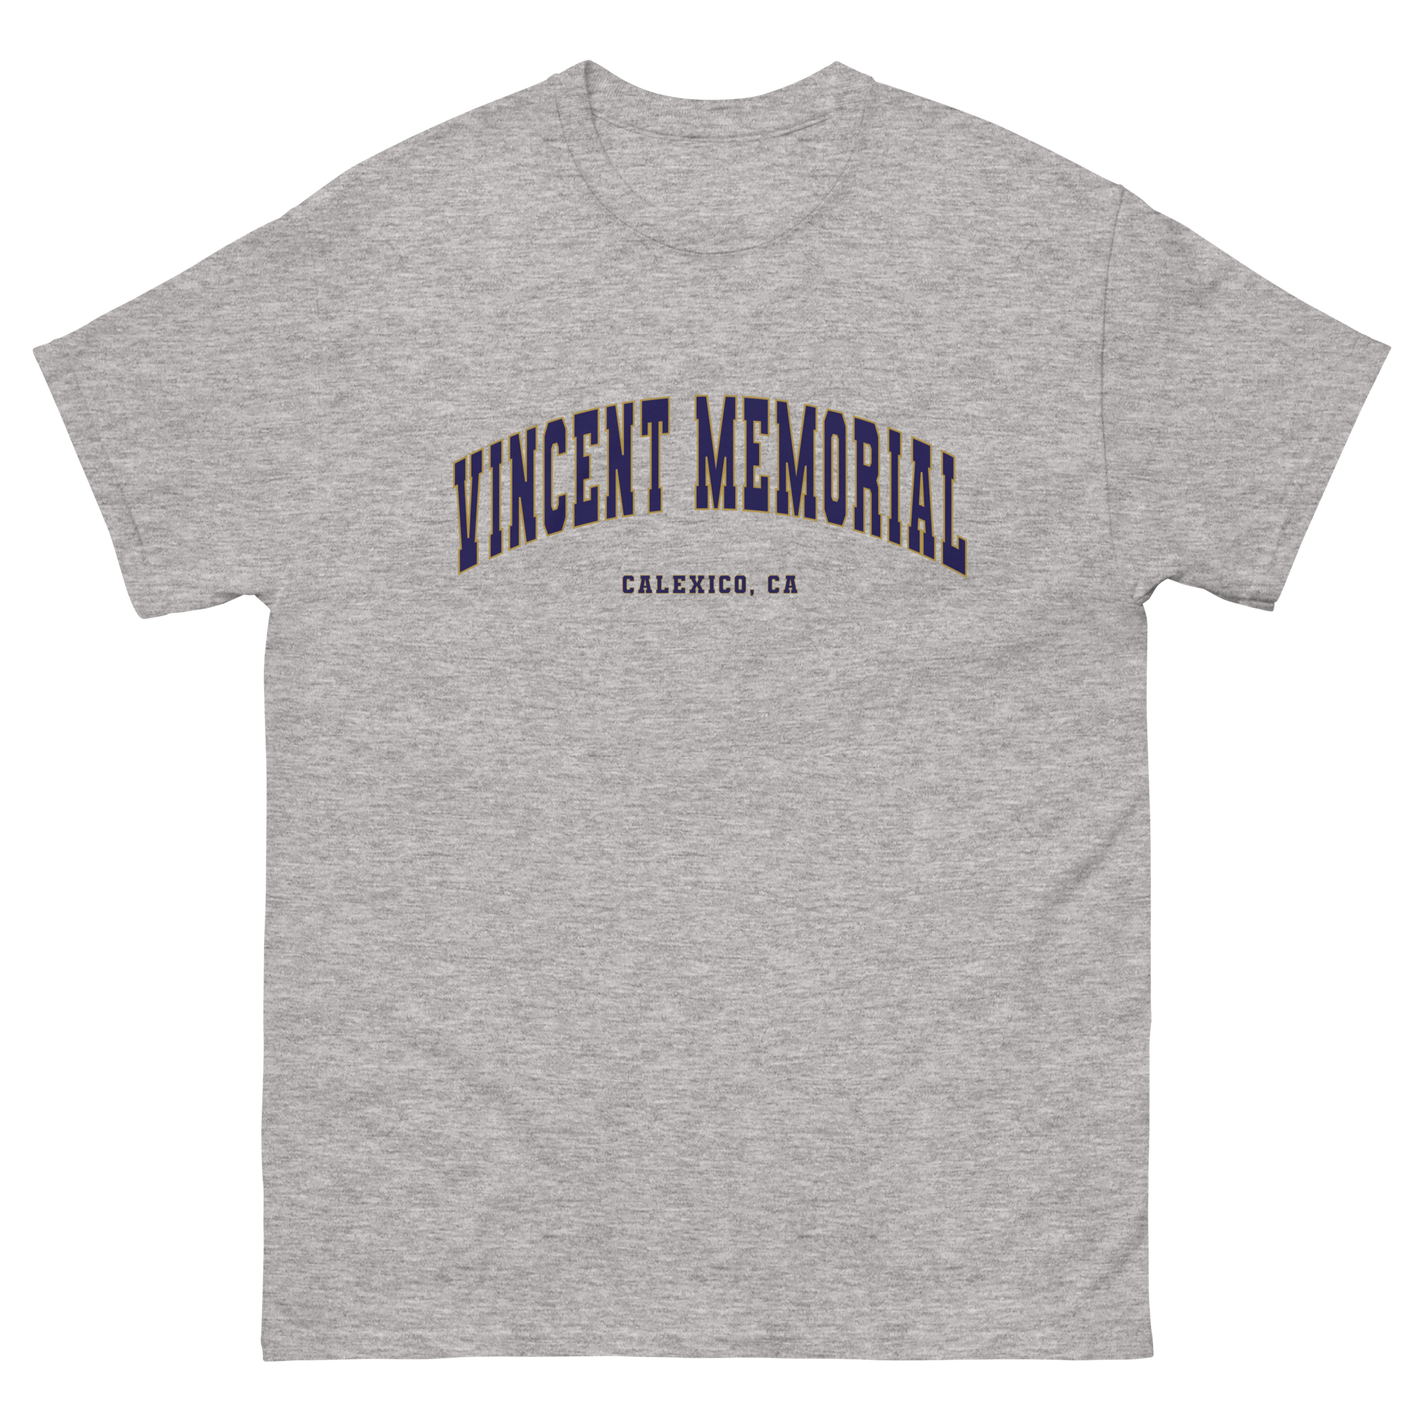 Vincent Memorial Men's classic tee